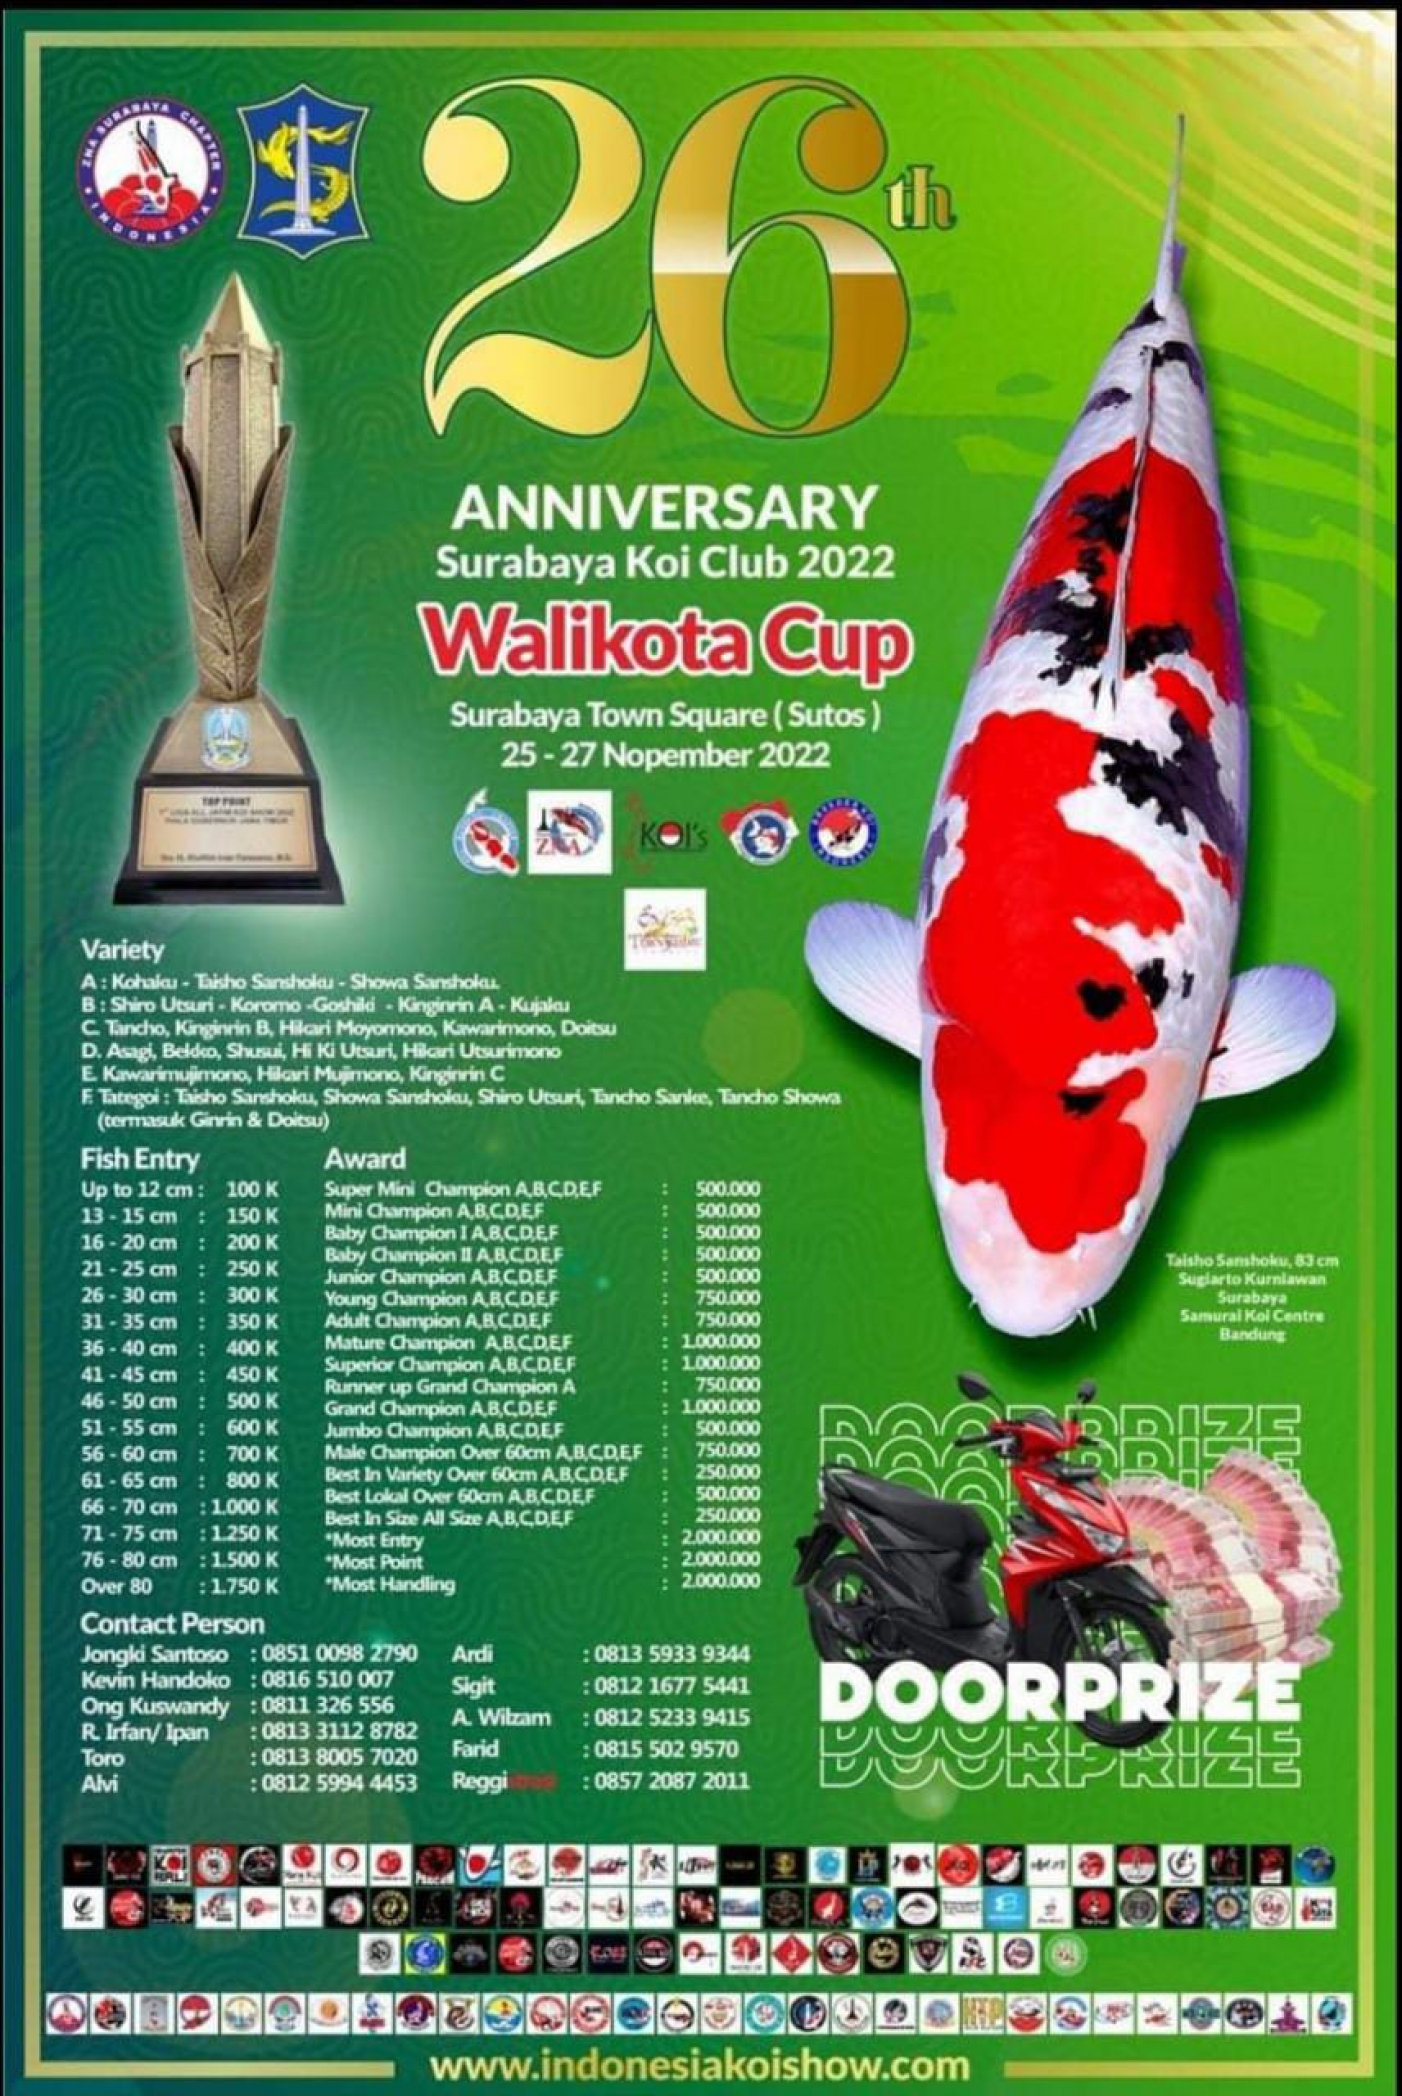 26th Anniversary Surabaya Koi Club 2022 Walikota Cup